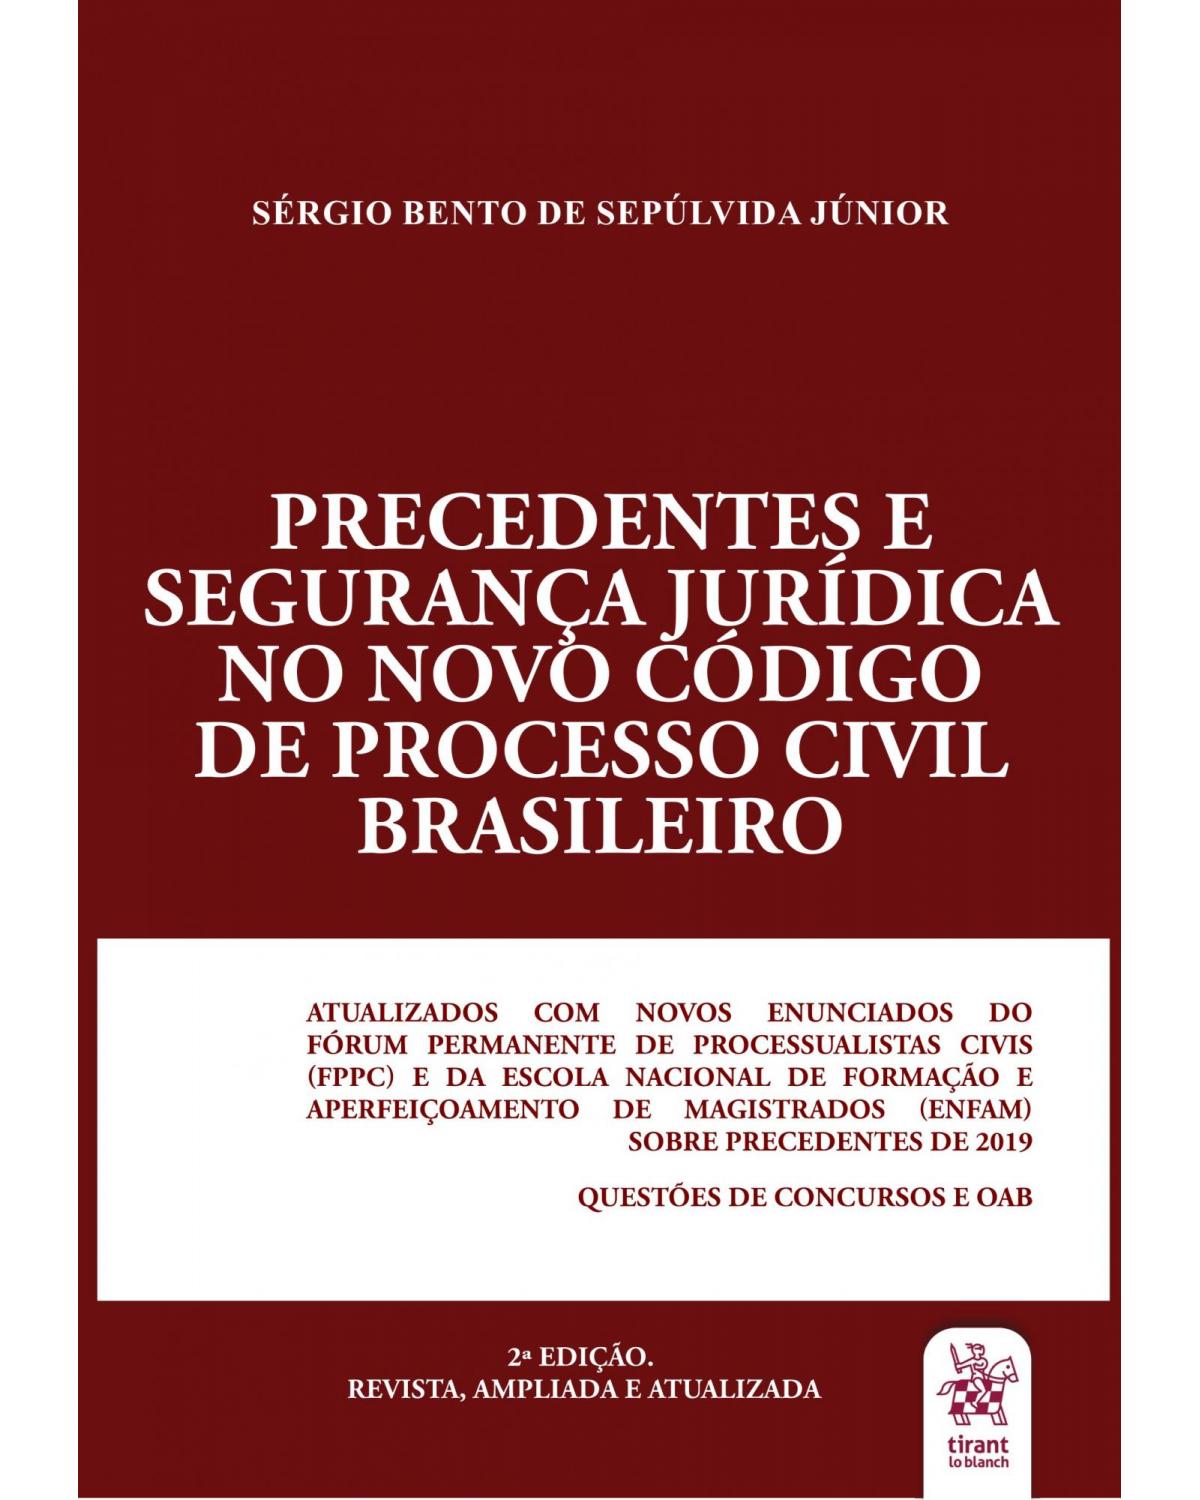 Precedentes e segurança jurídica no novo código de processo civil brasileiro - 2ª Edição | 2020